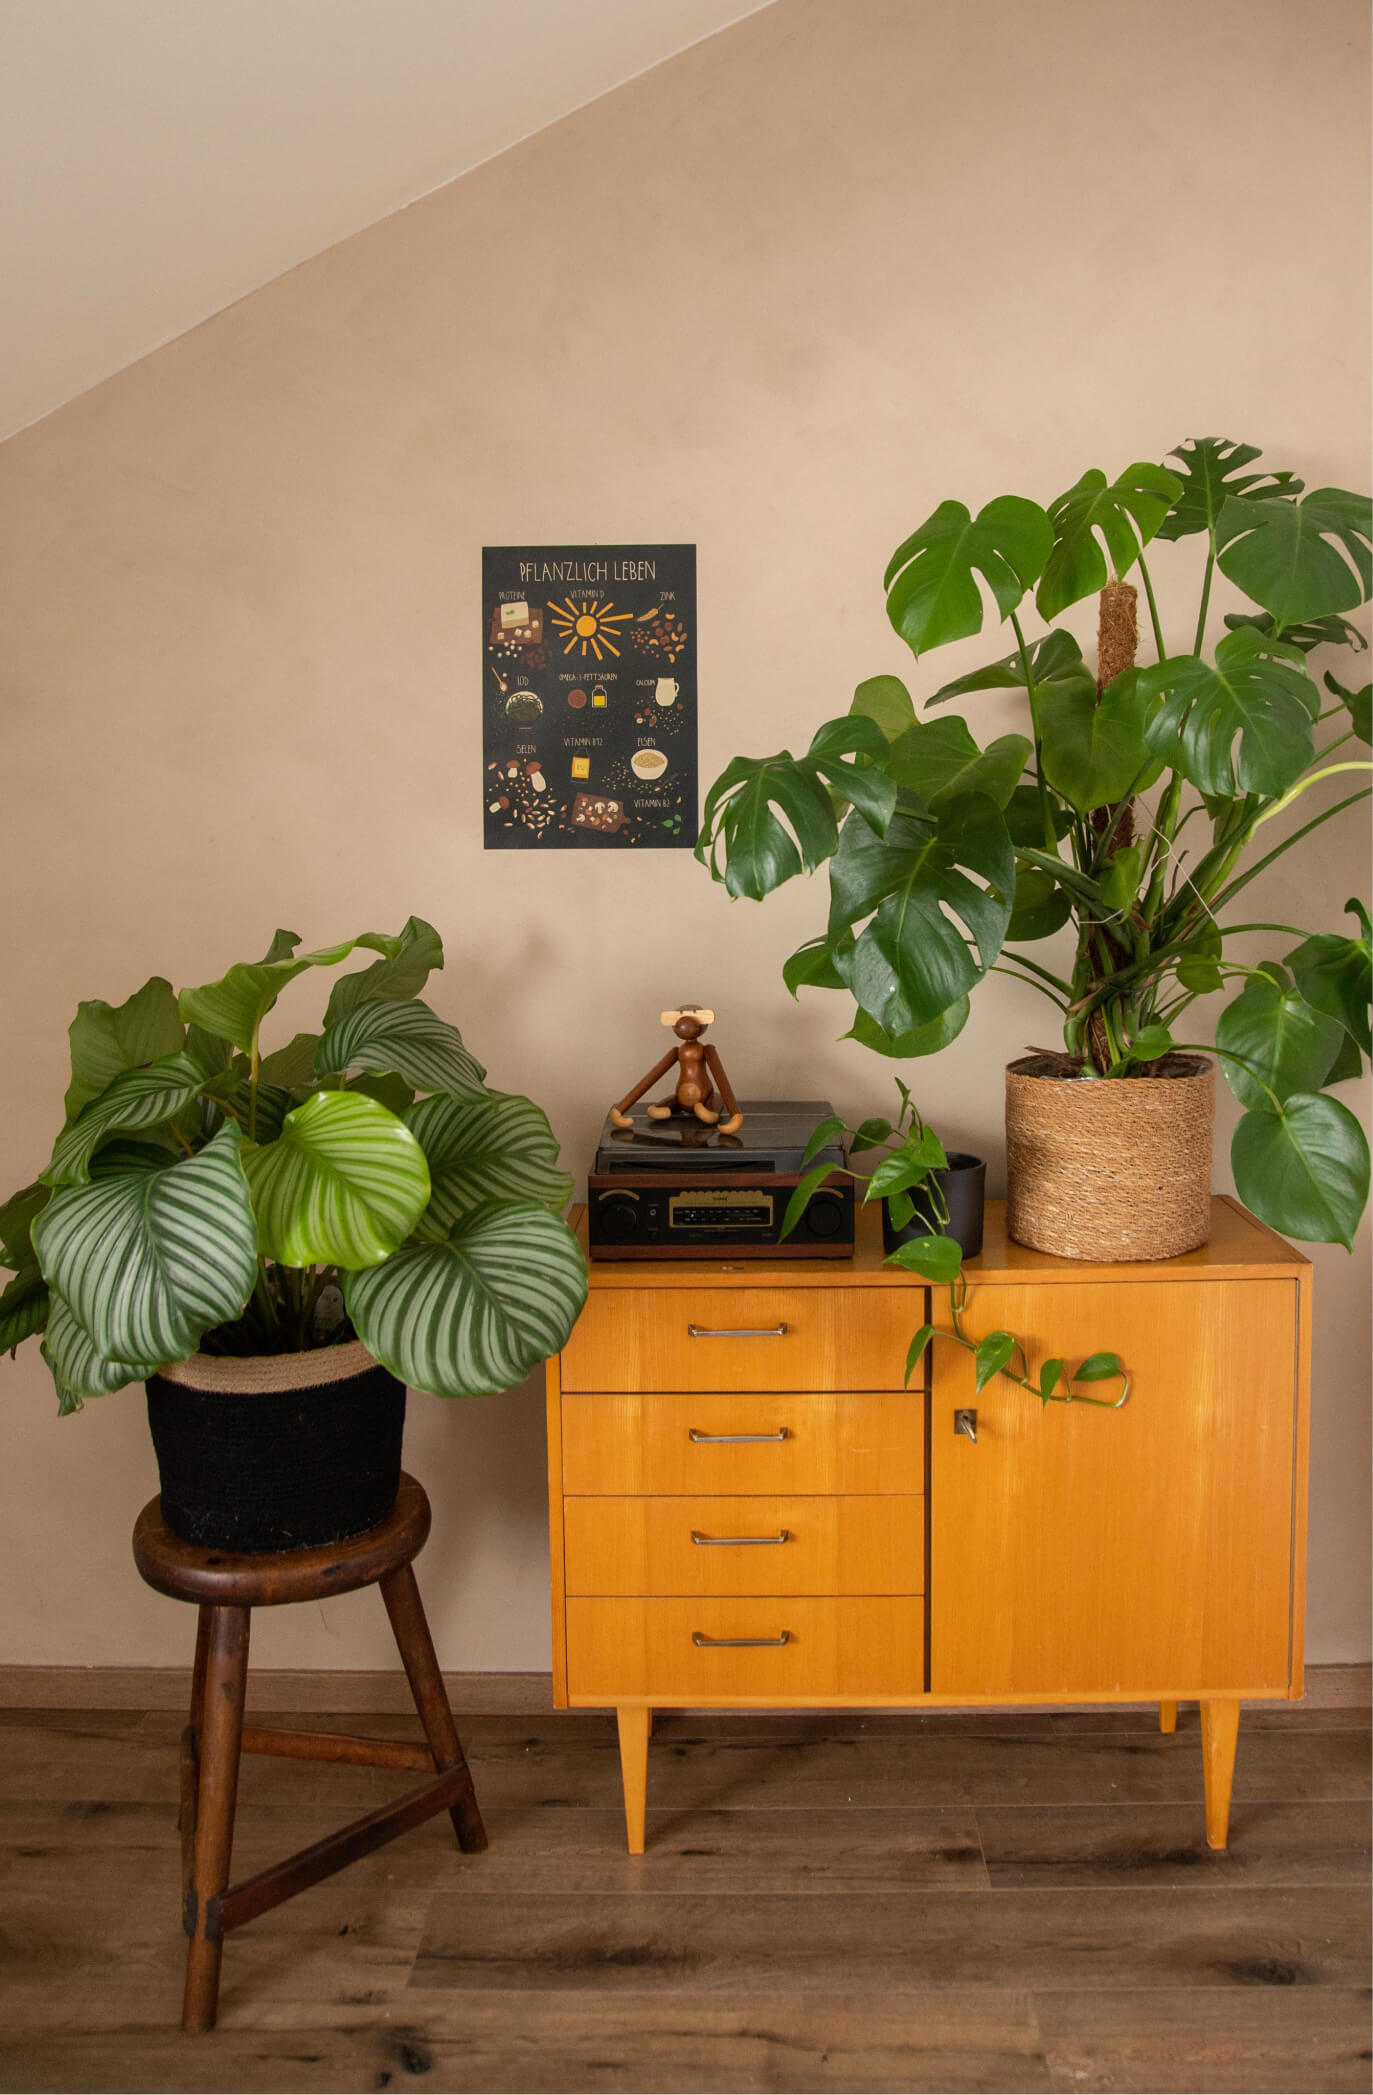 Das Pflanzlich leben Poster mit allen wichtigen veganen Nährstoffen hängt an der Wand, zwischendrin sind Vintage Möbel und Pflanzen.